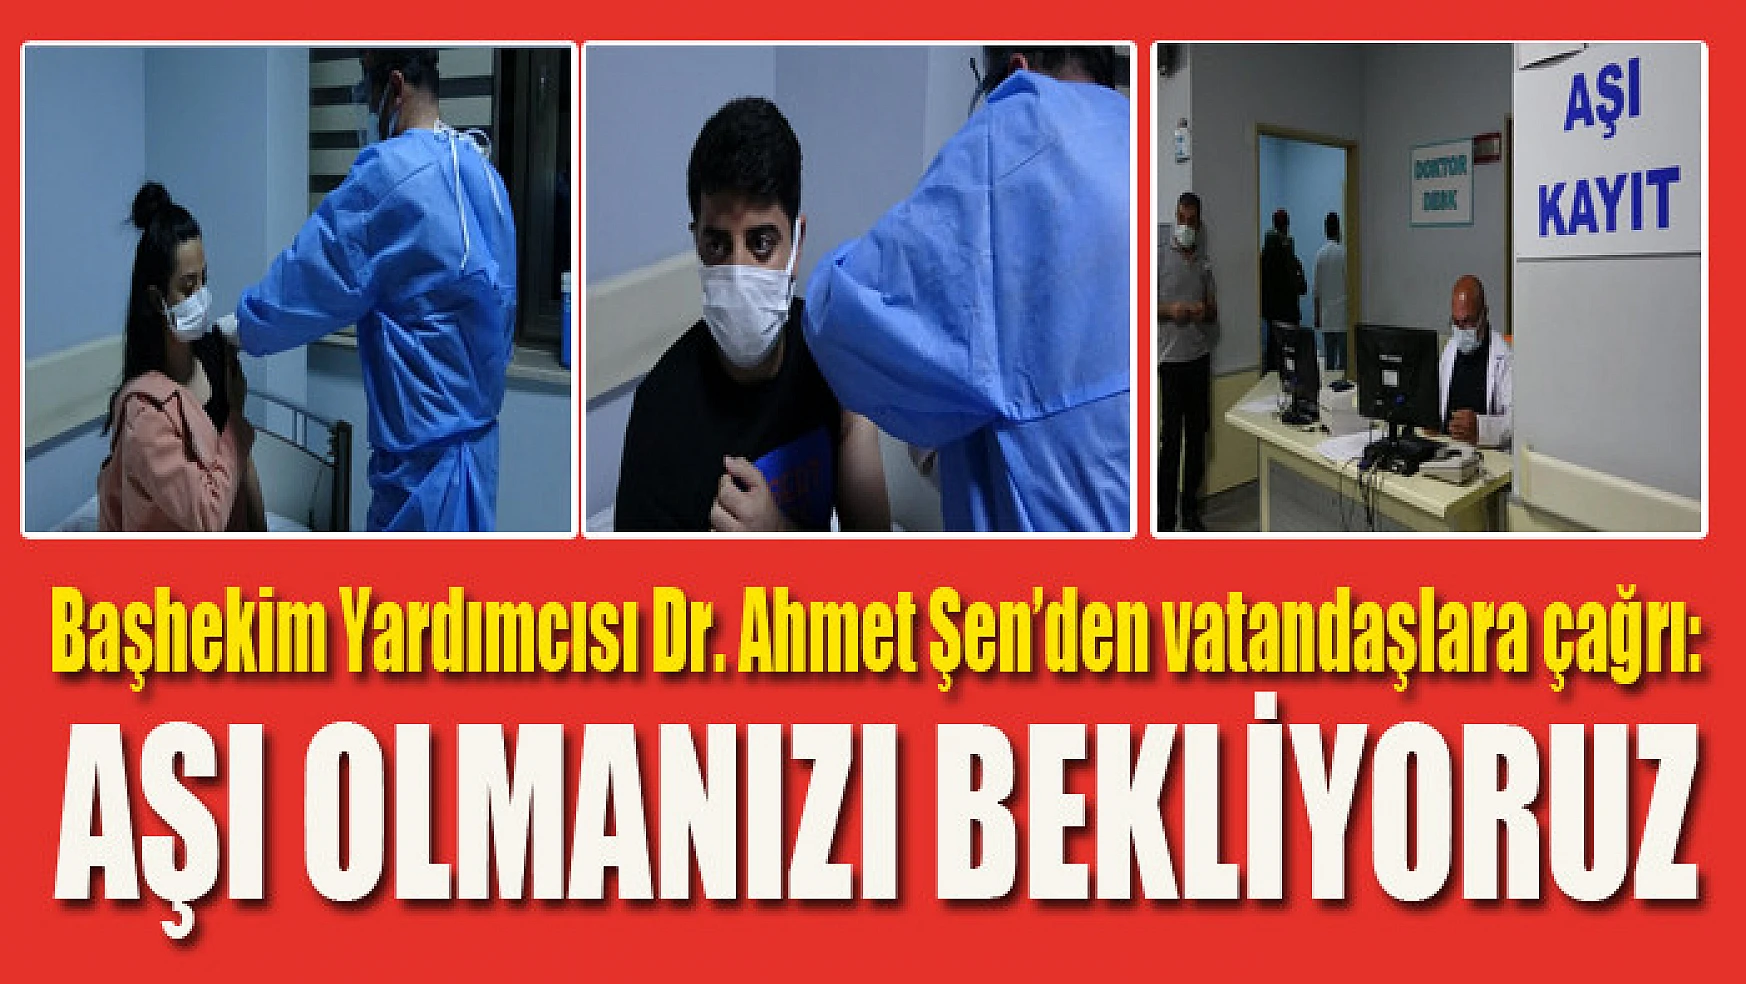 Başhekim Yardımcısı Dr. Ahmet Şen'den vatandaşlara çağrı: Aşı olmanızı bekliyoruz